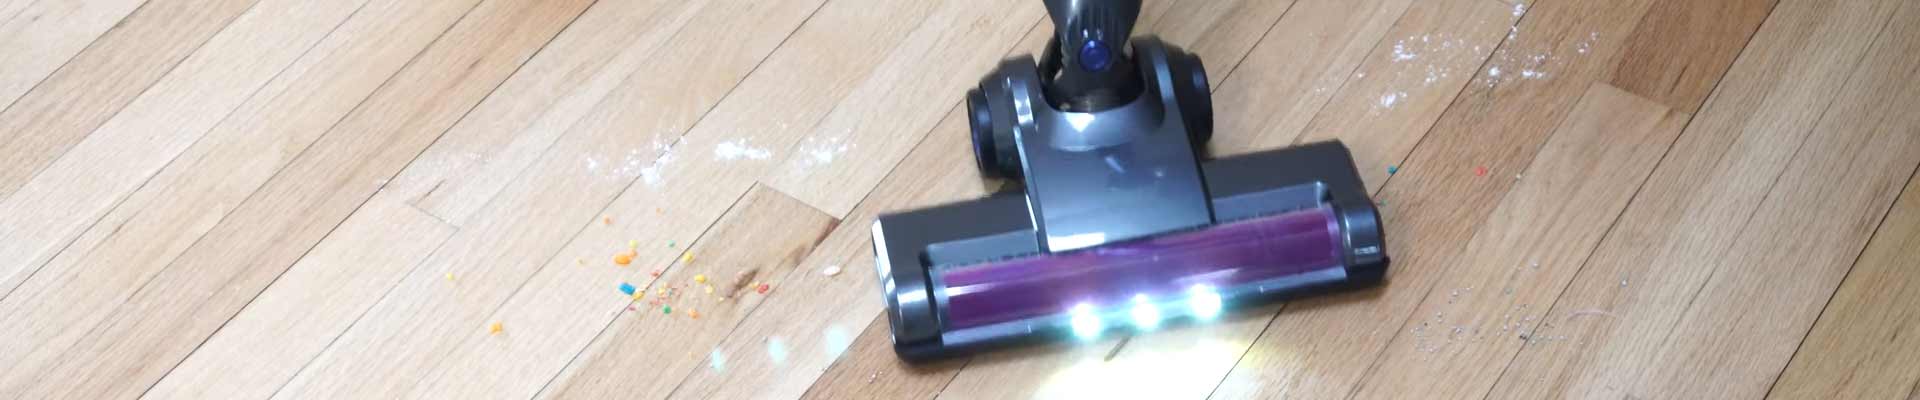 NEQUARE-Cordless-Vacuum-Cleaner